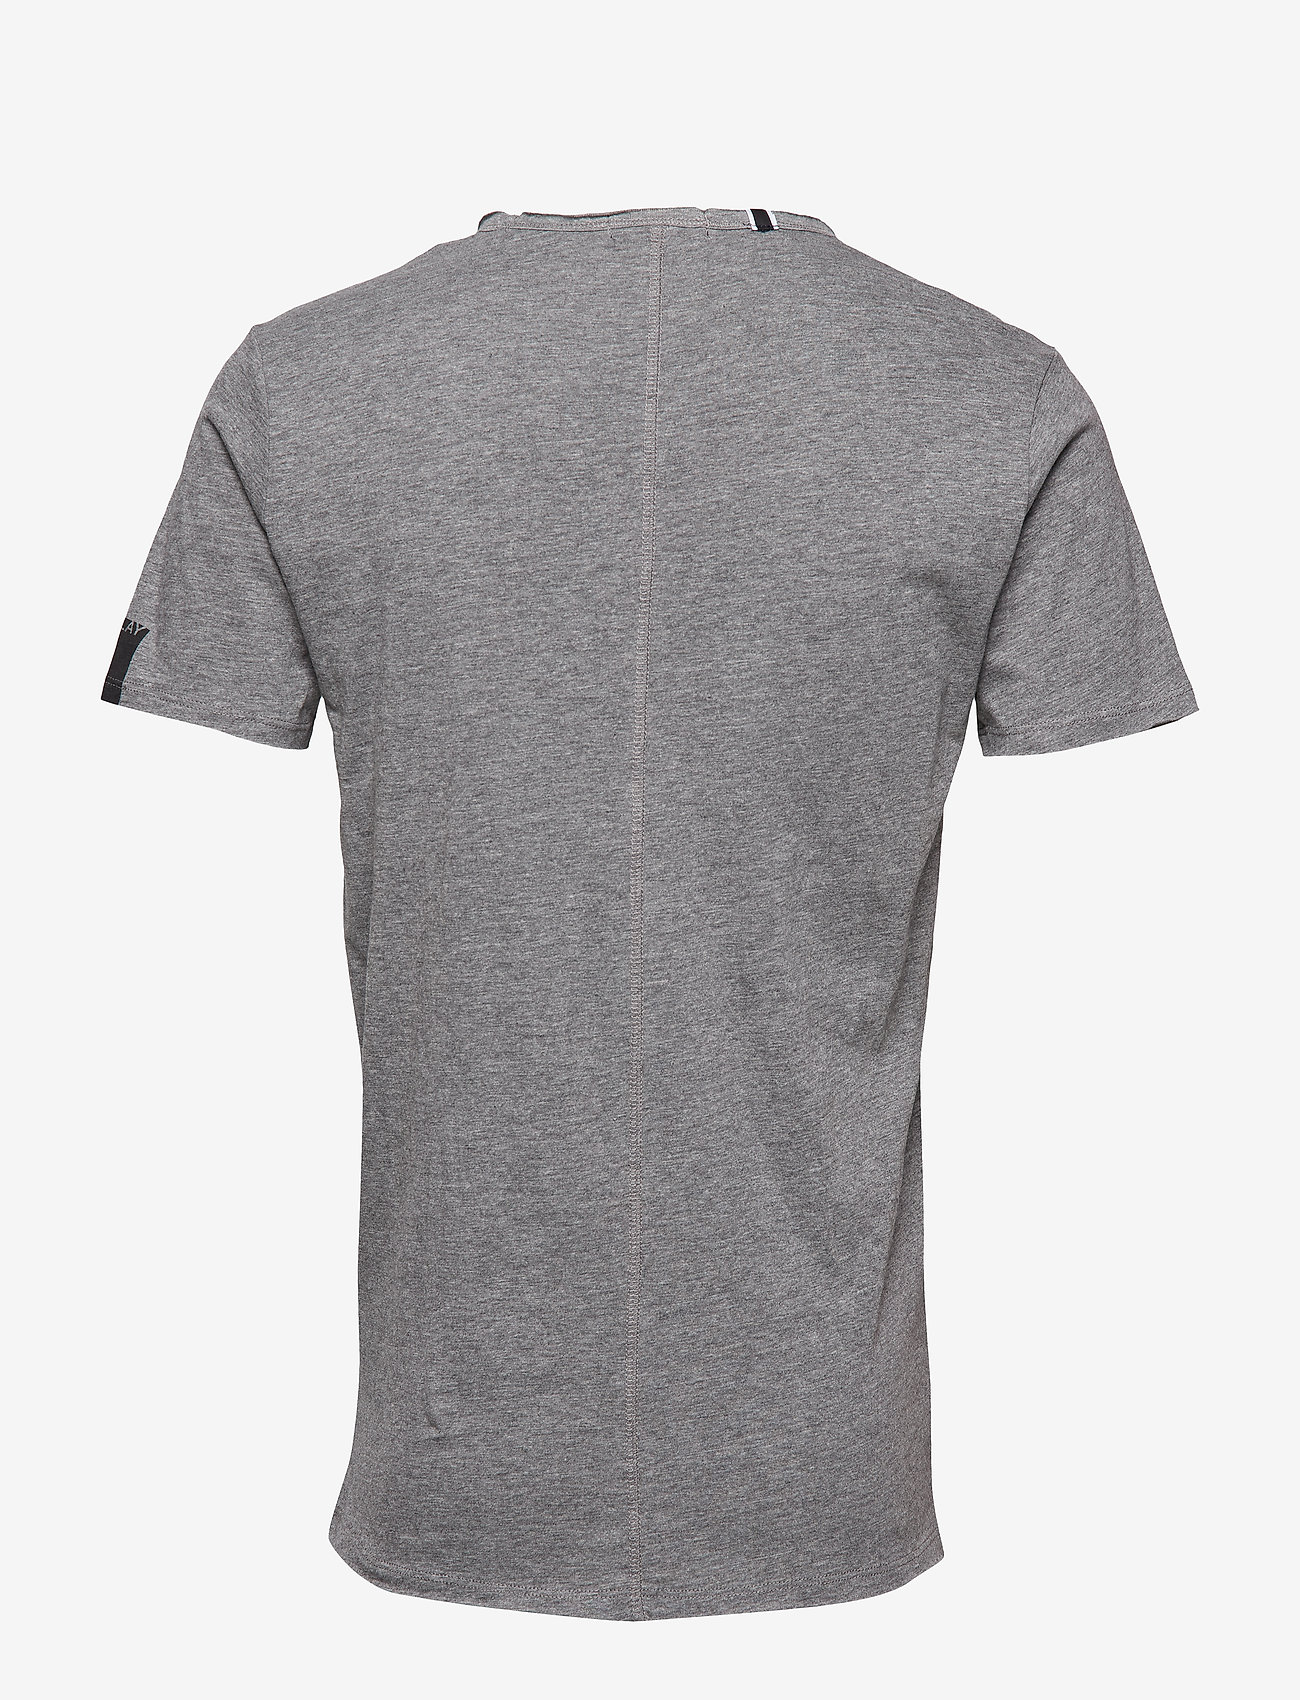 Replay - T-Shirt - laagste prijzen - dark grey melange - 1